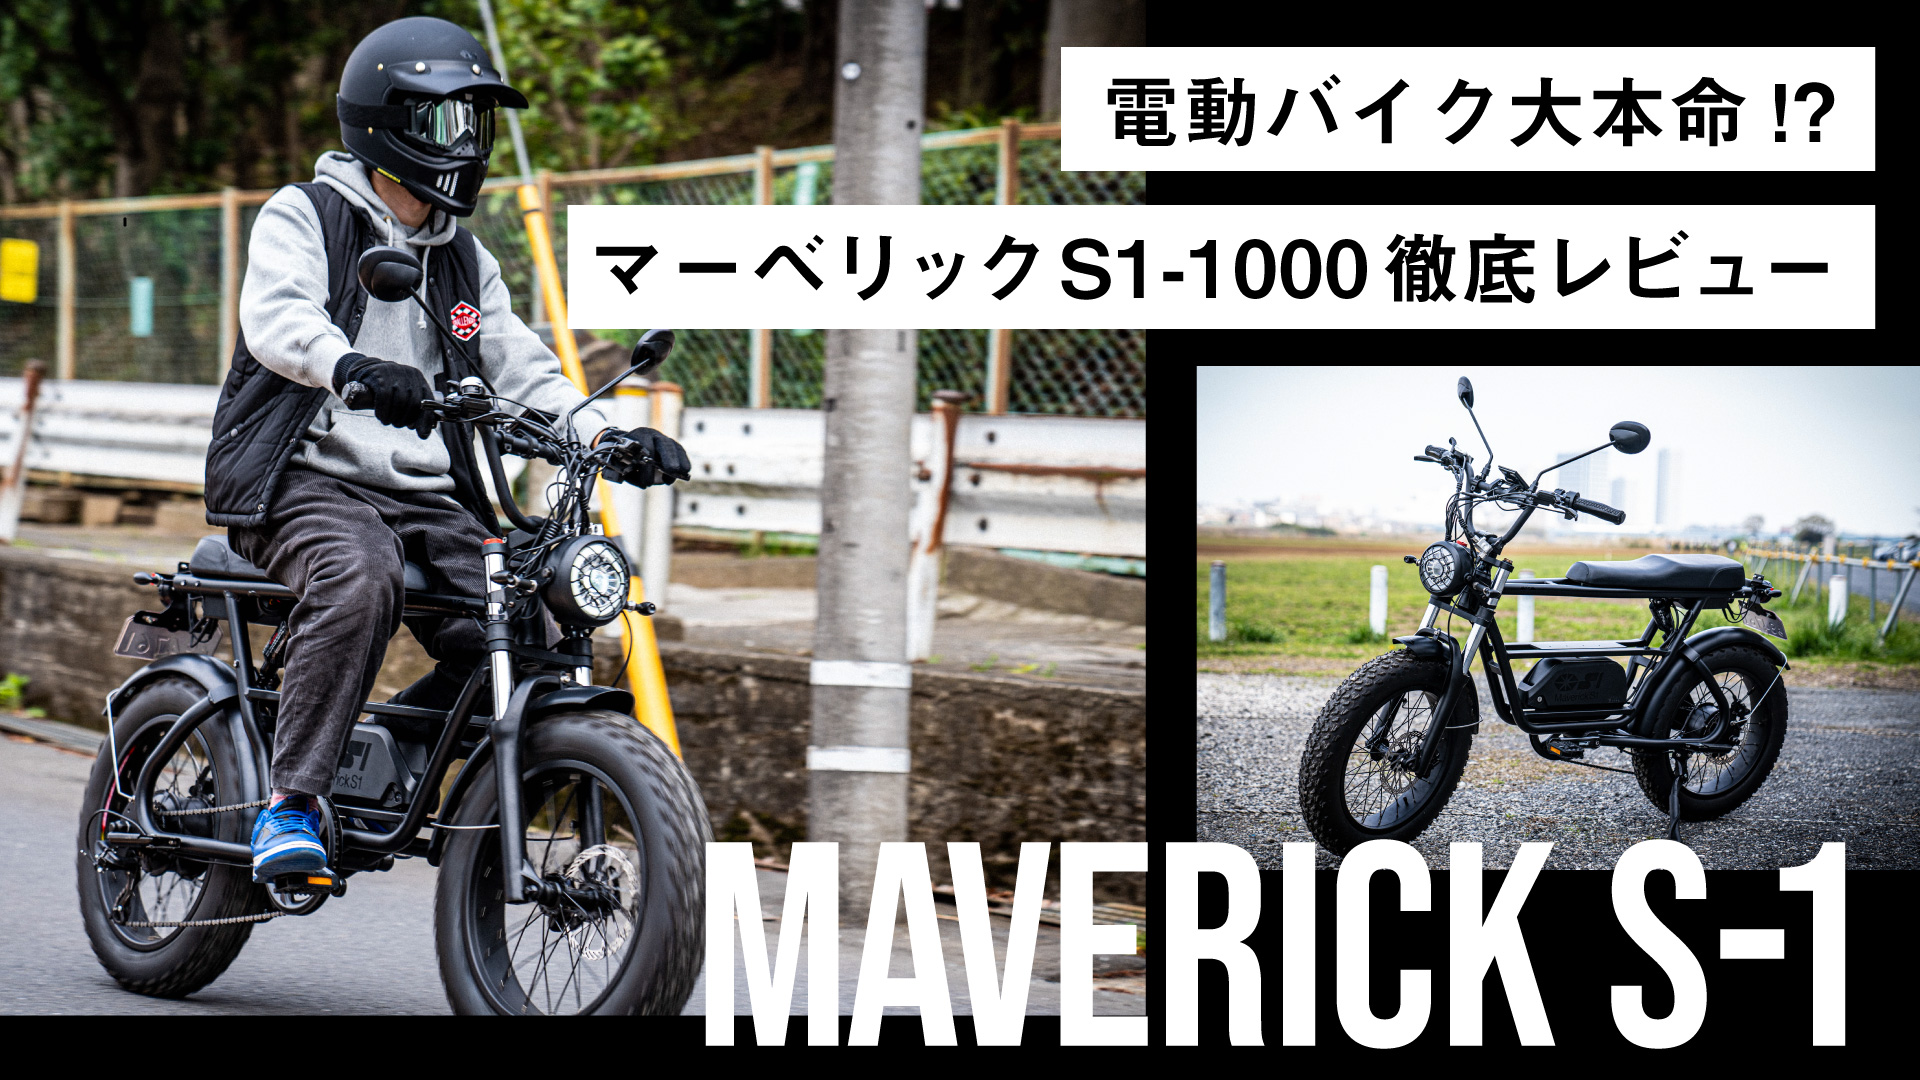 原付二種 電動バイク Maverick S1-1000(マーベリック S1)